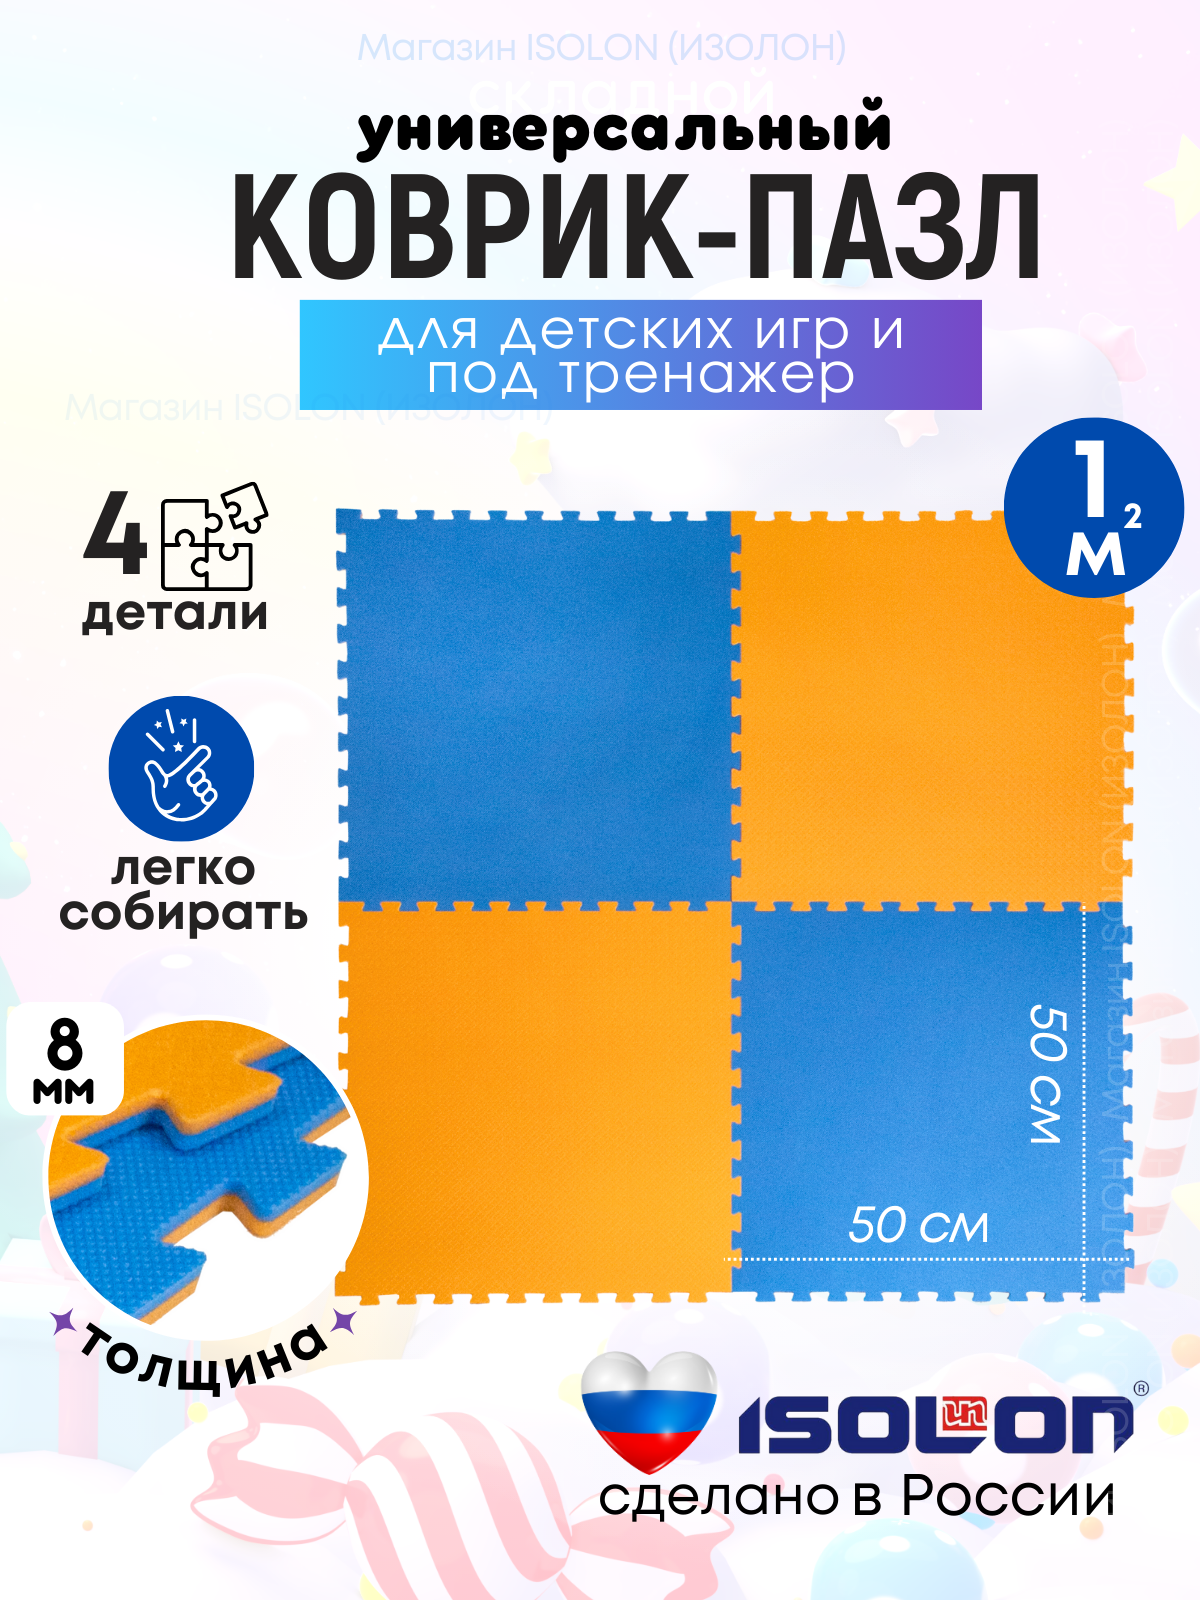 Мат коврик-пазл мягкий пол Isolon, 50х50 см, в комплекте 4 шт, синий/оранжевый коврик balance для ванных комнат акрил оранжевый 60 х 90 см